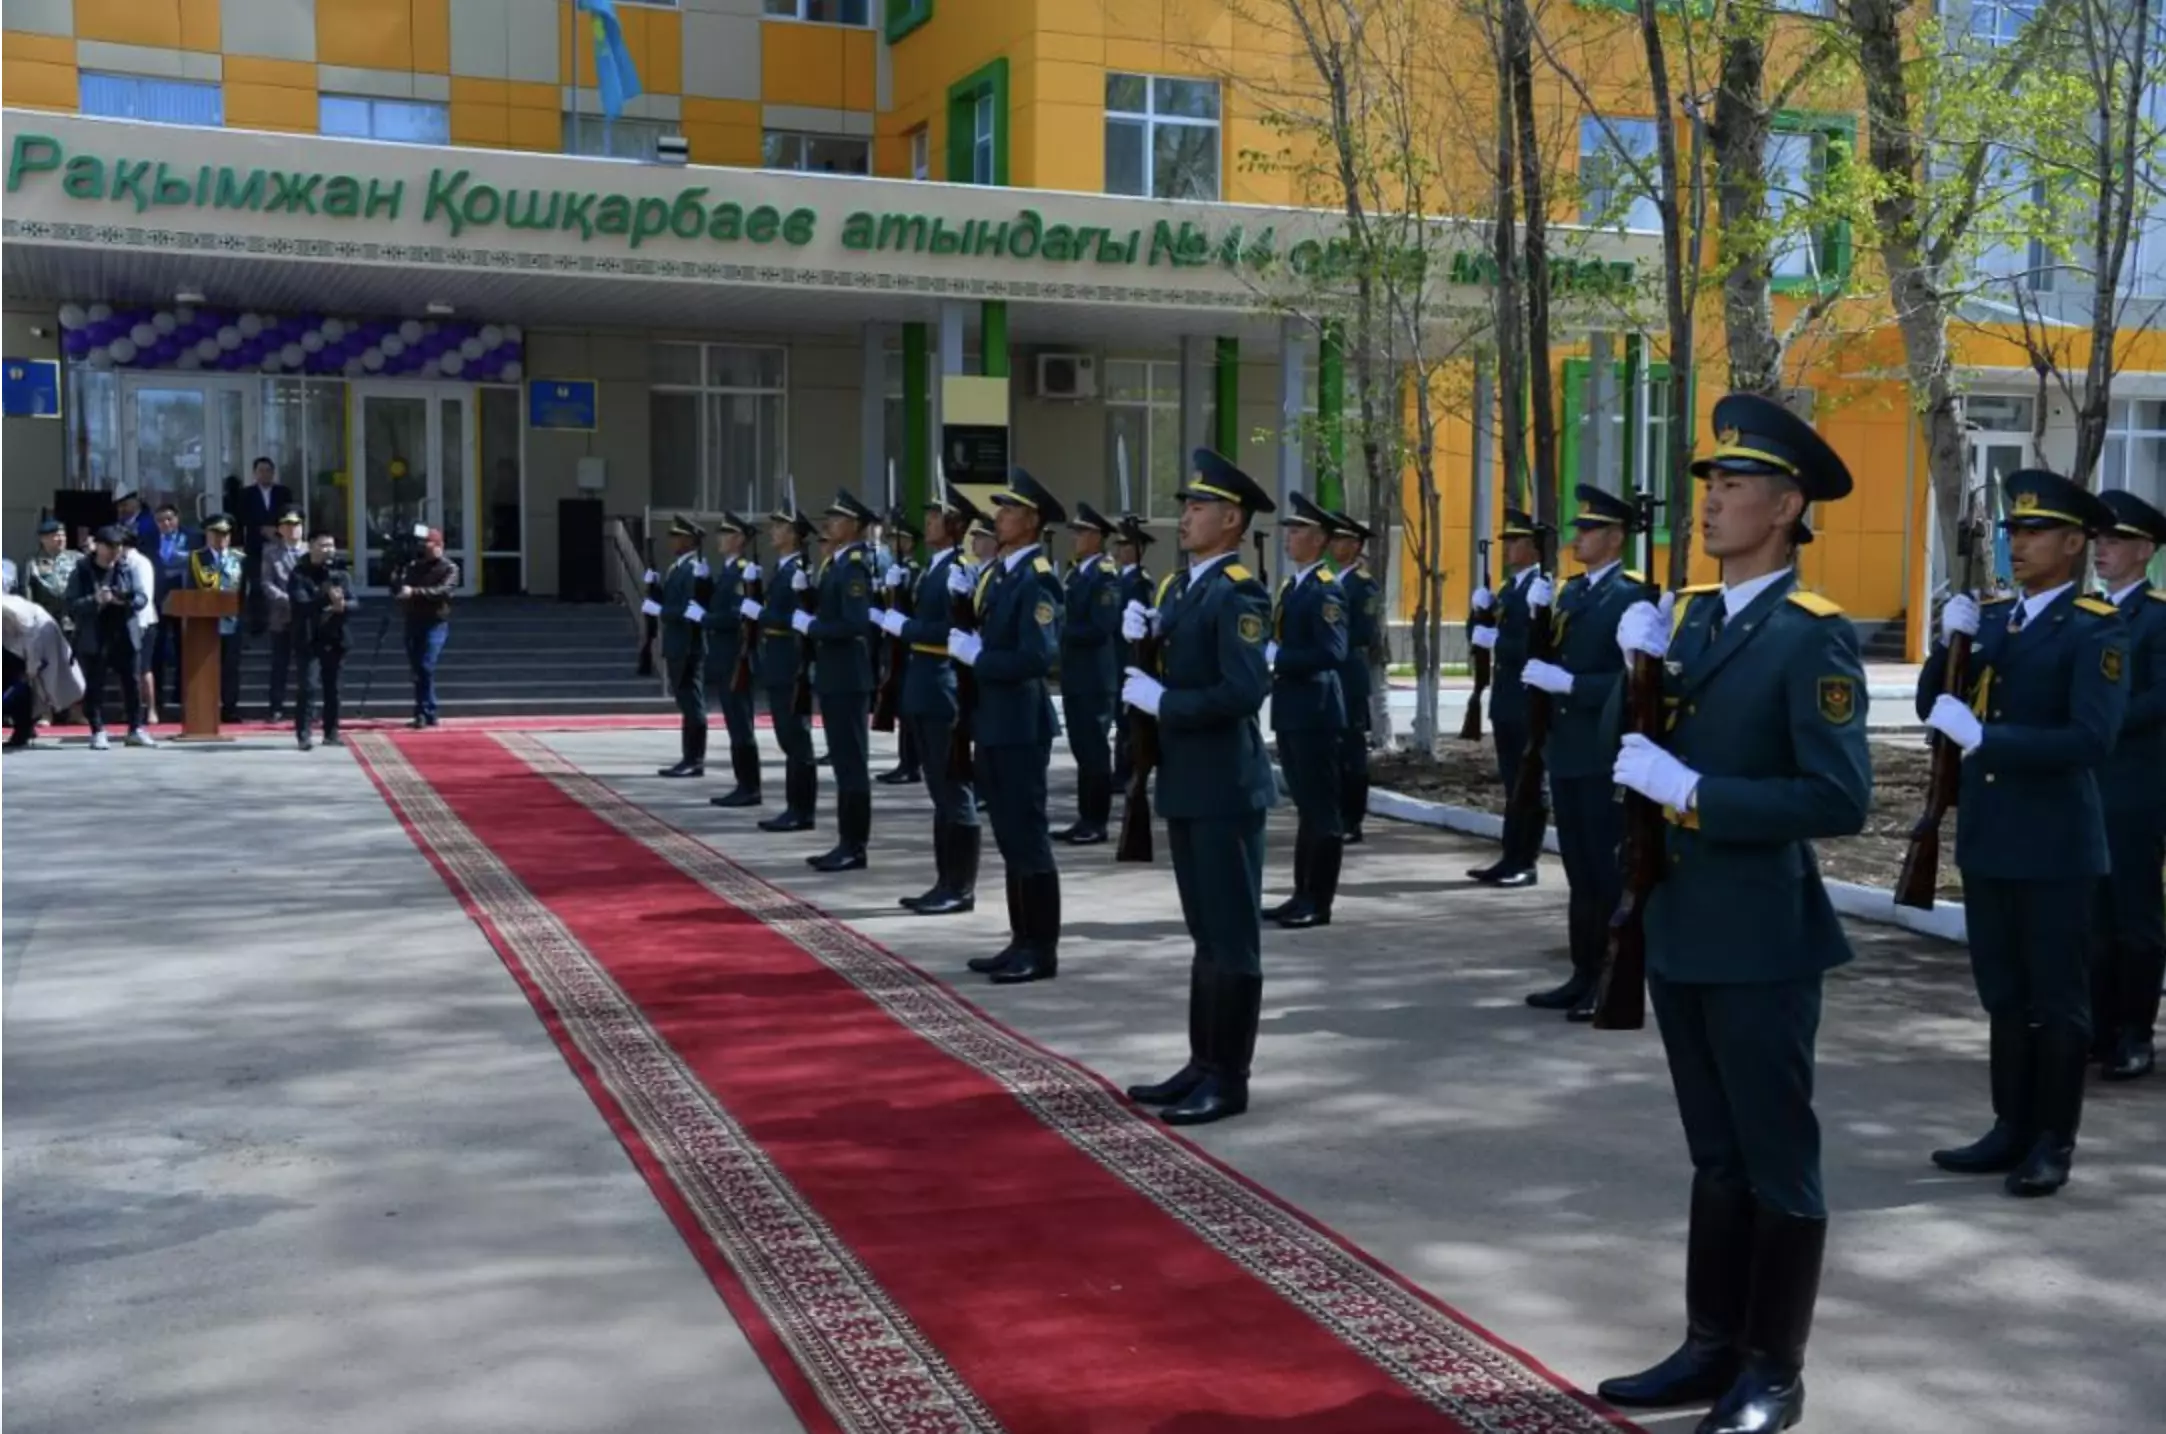 Имя героя войны Рахимжана Кошкарбаева присвоено школе в Астане